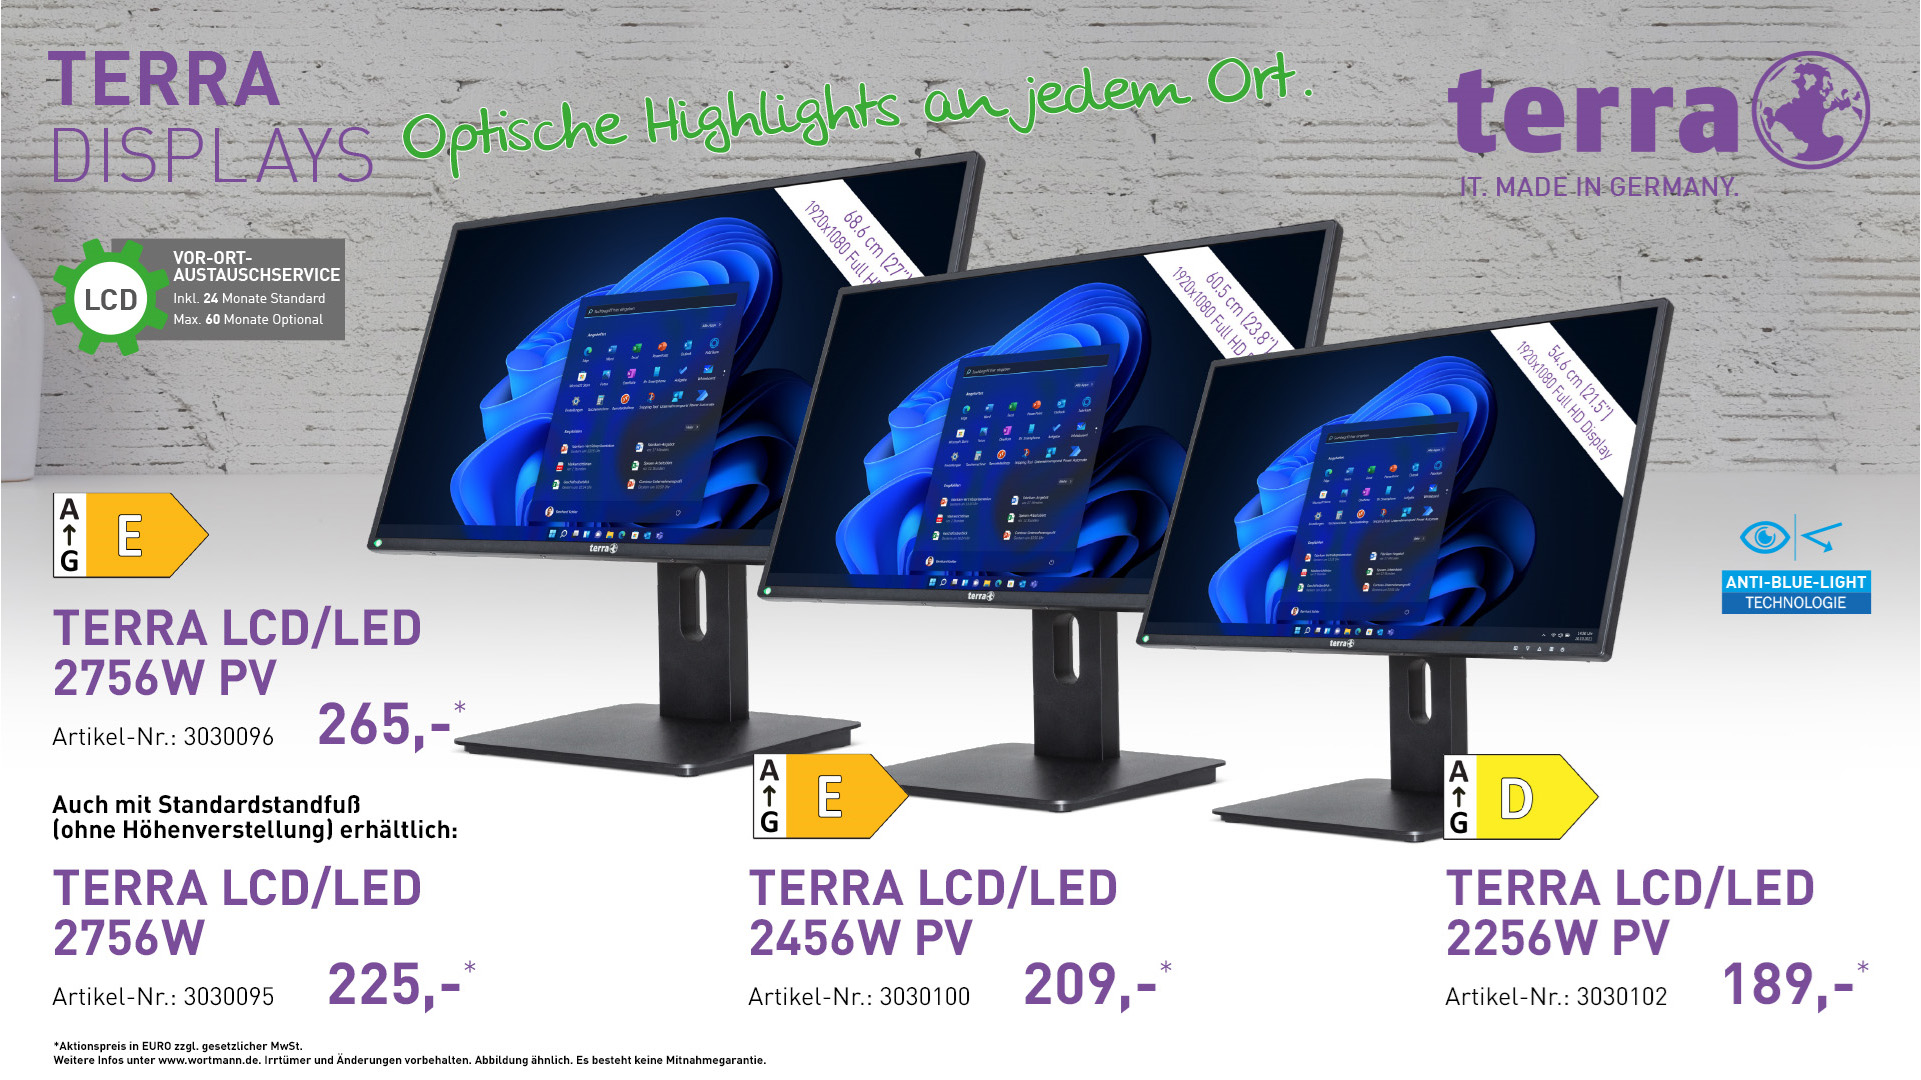 TERRA LCD/LED